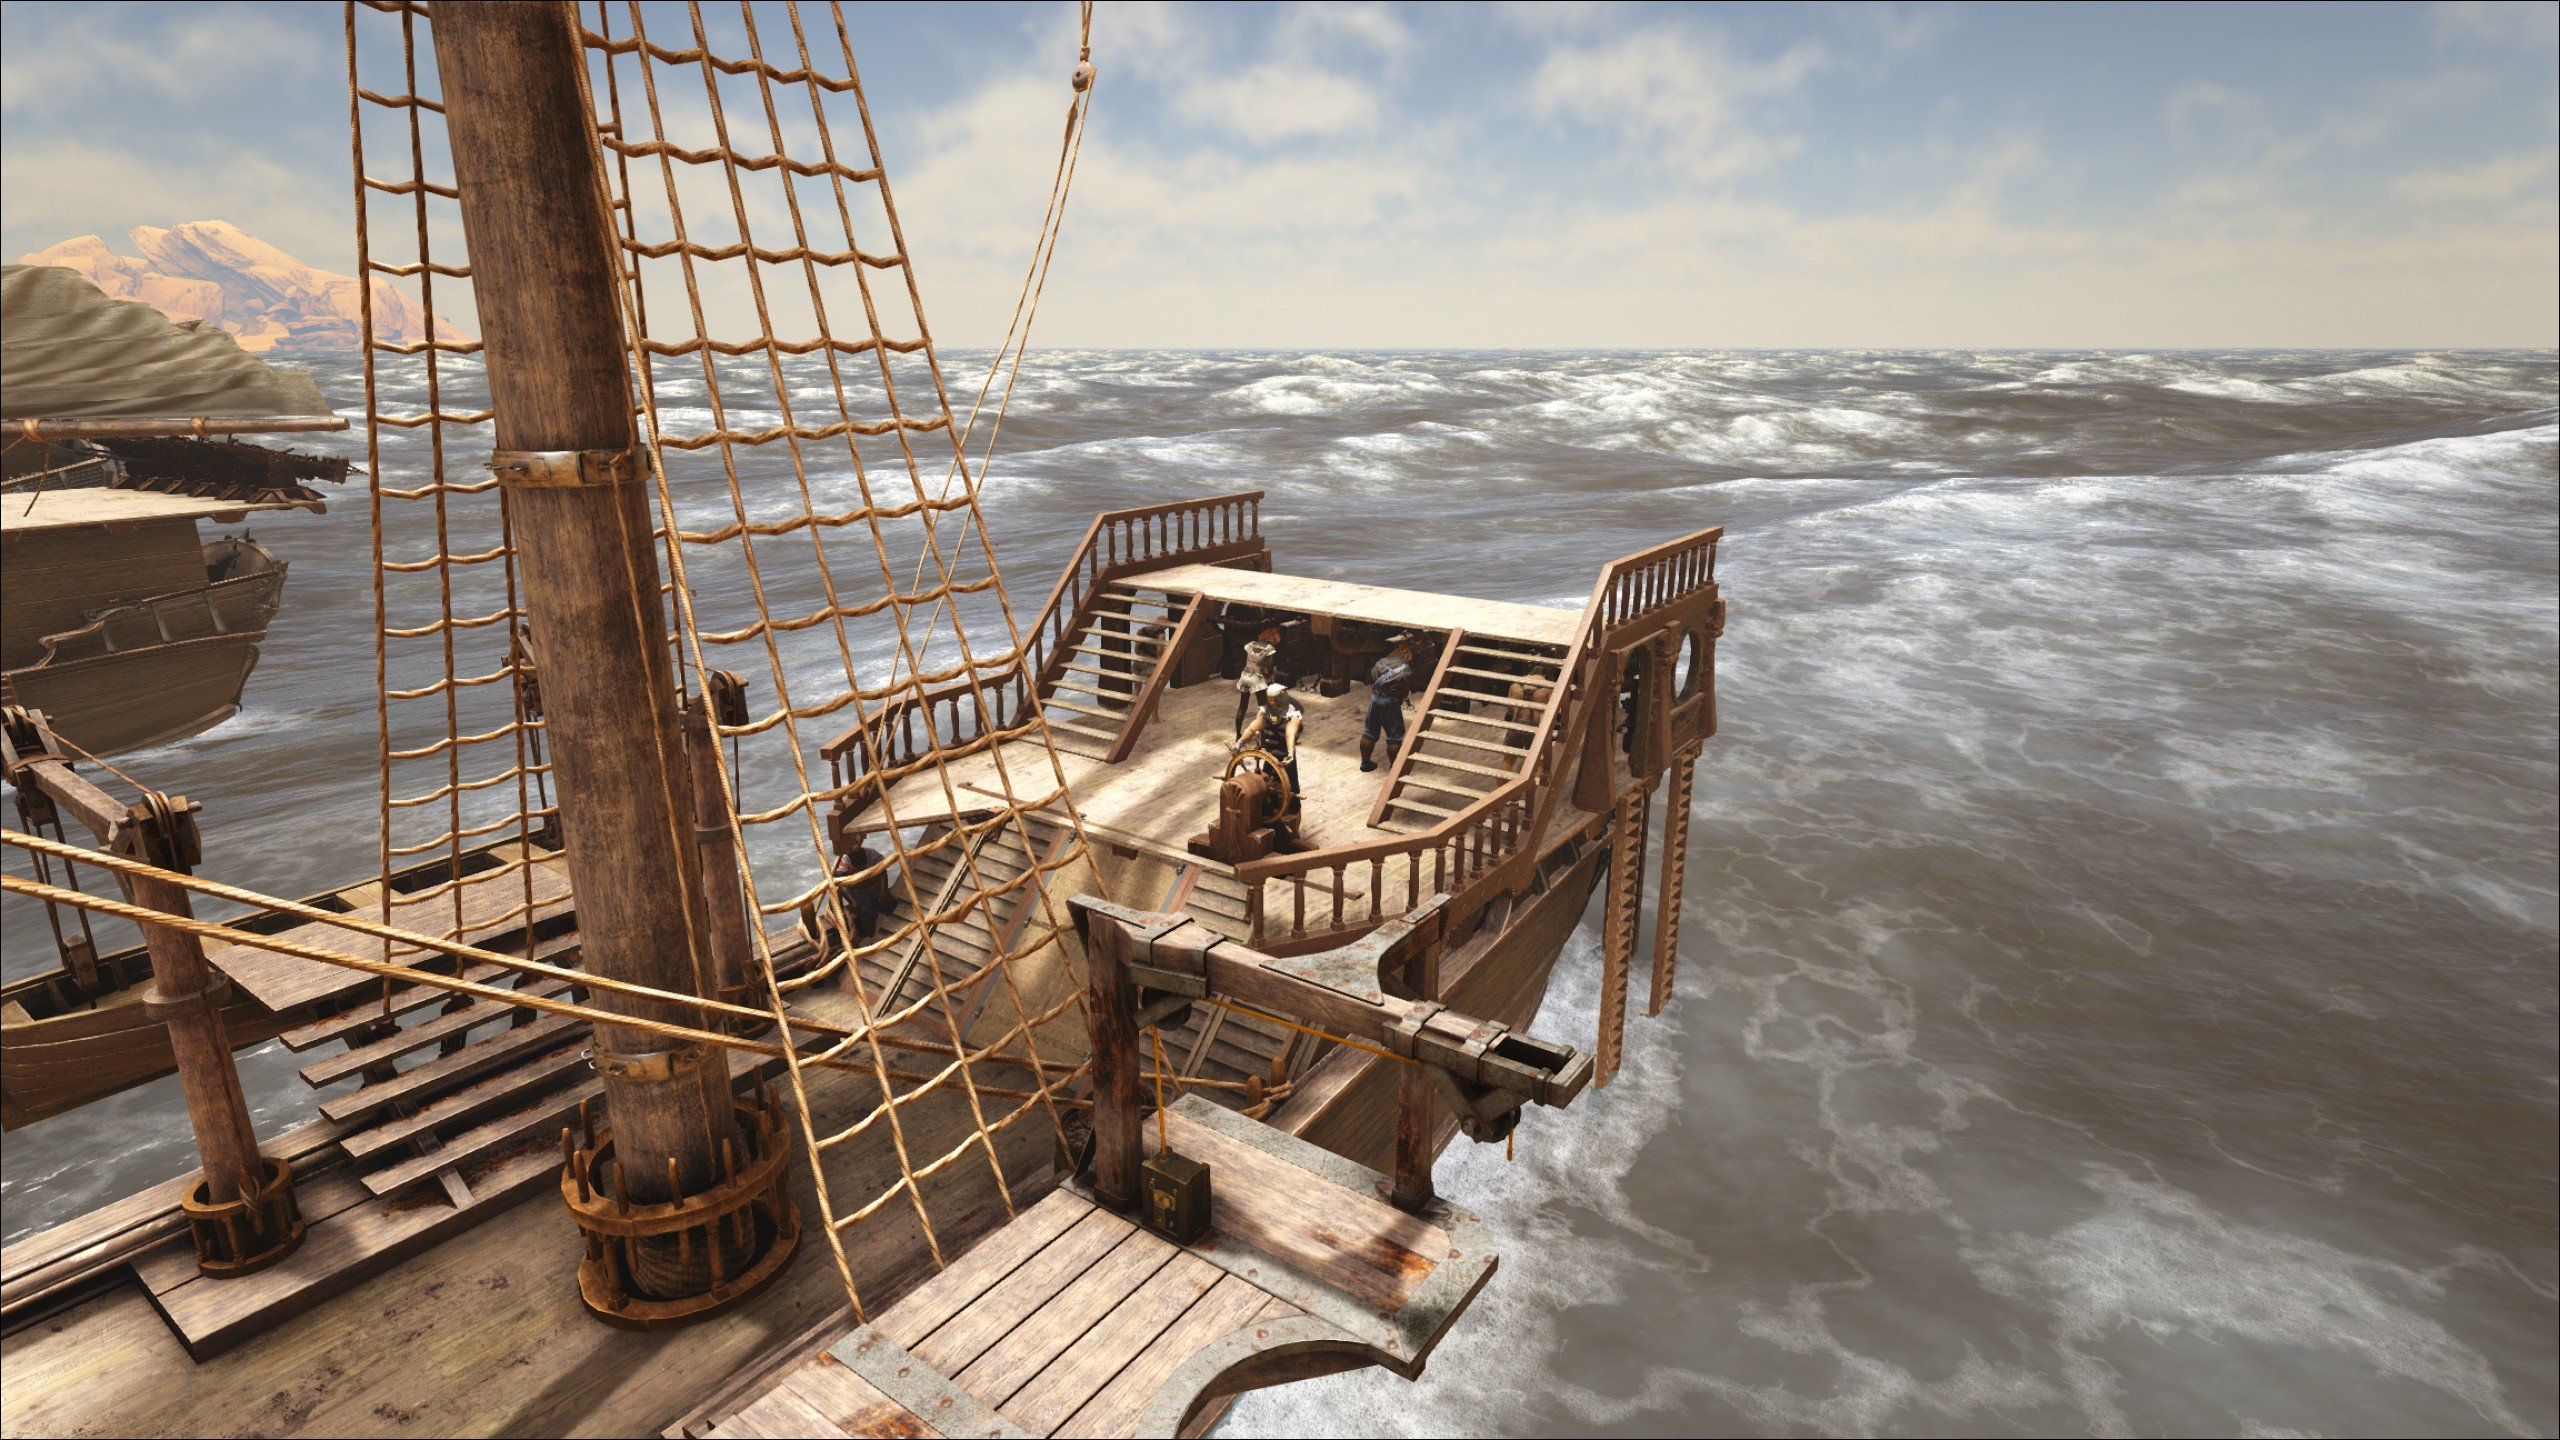 Старая палуба. Палуба пиратского корабля вид сбоку. Палуба старинного корабля. Палуба деревянного корабля. Палуба пиратского корабля.